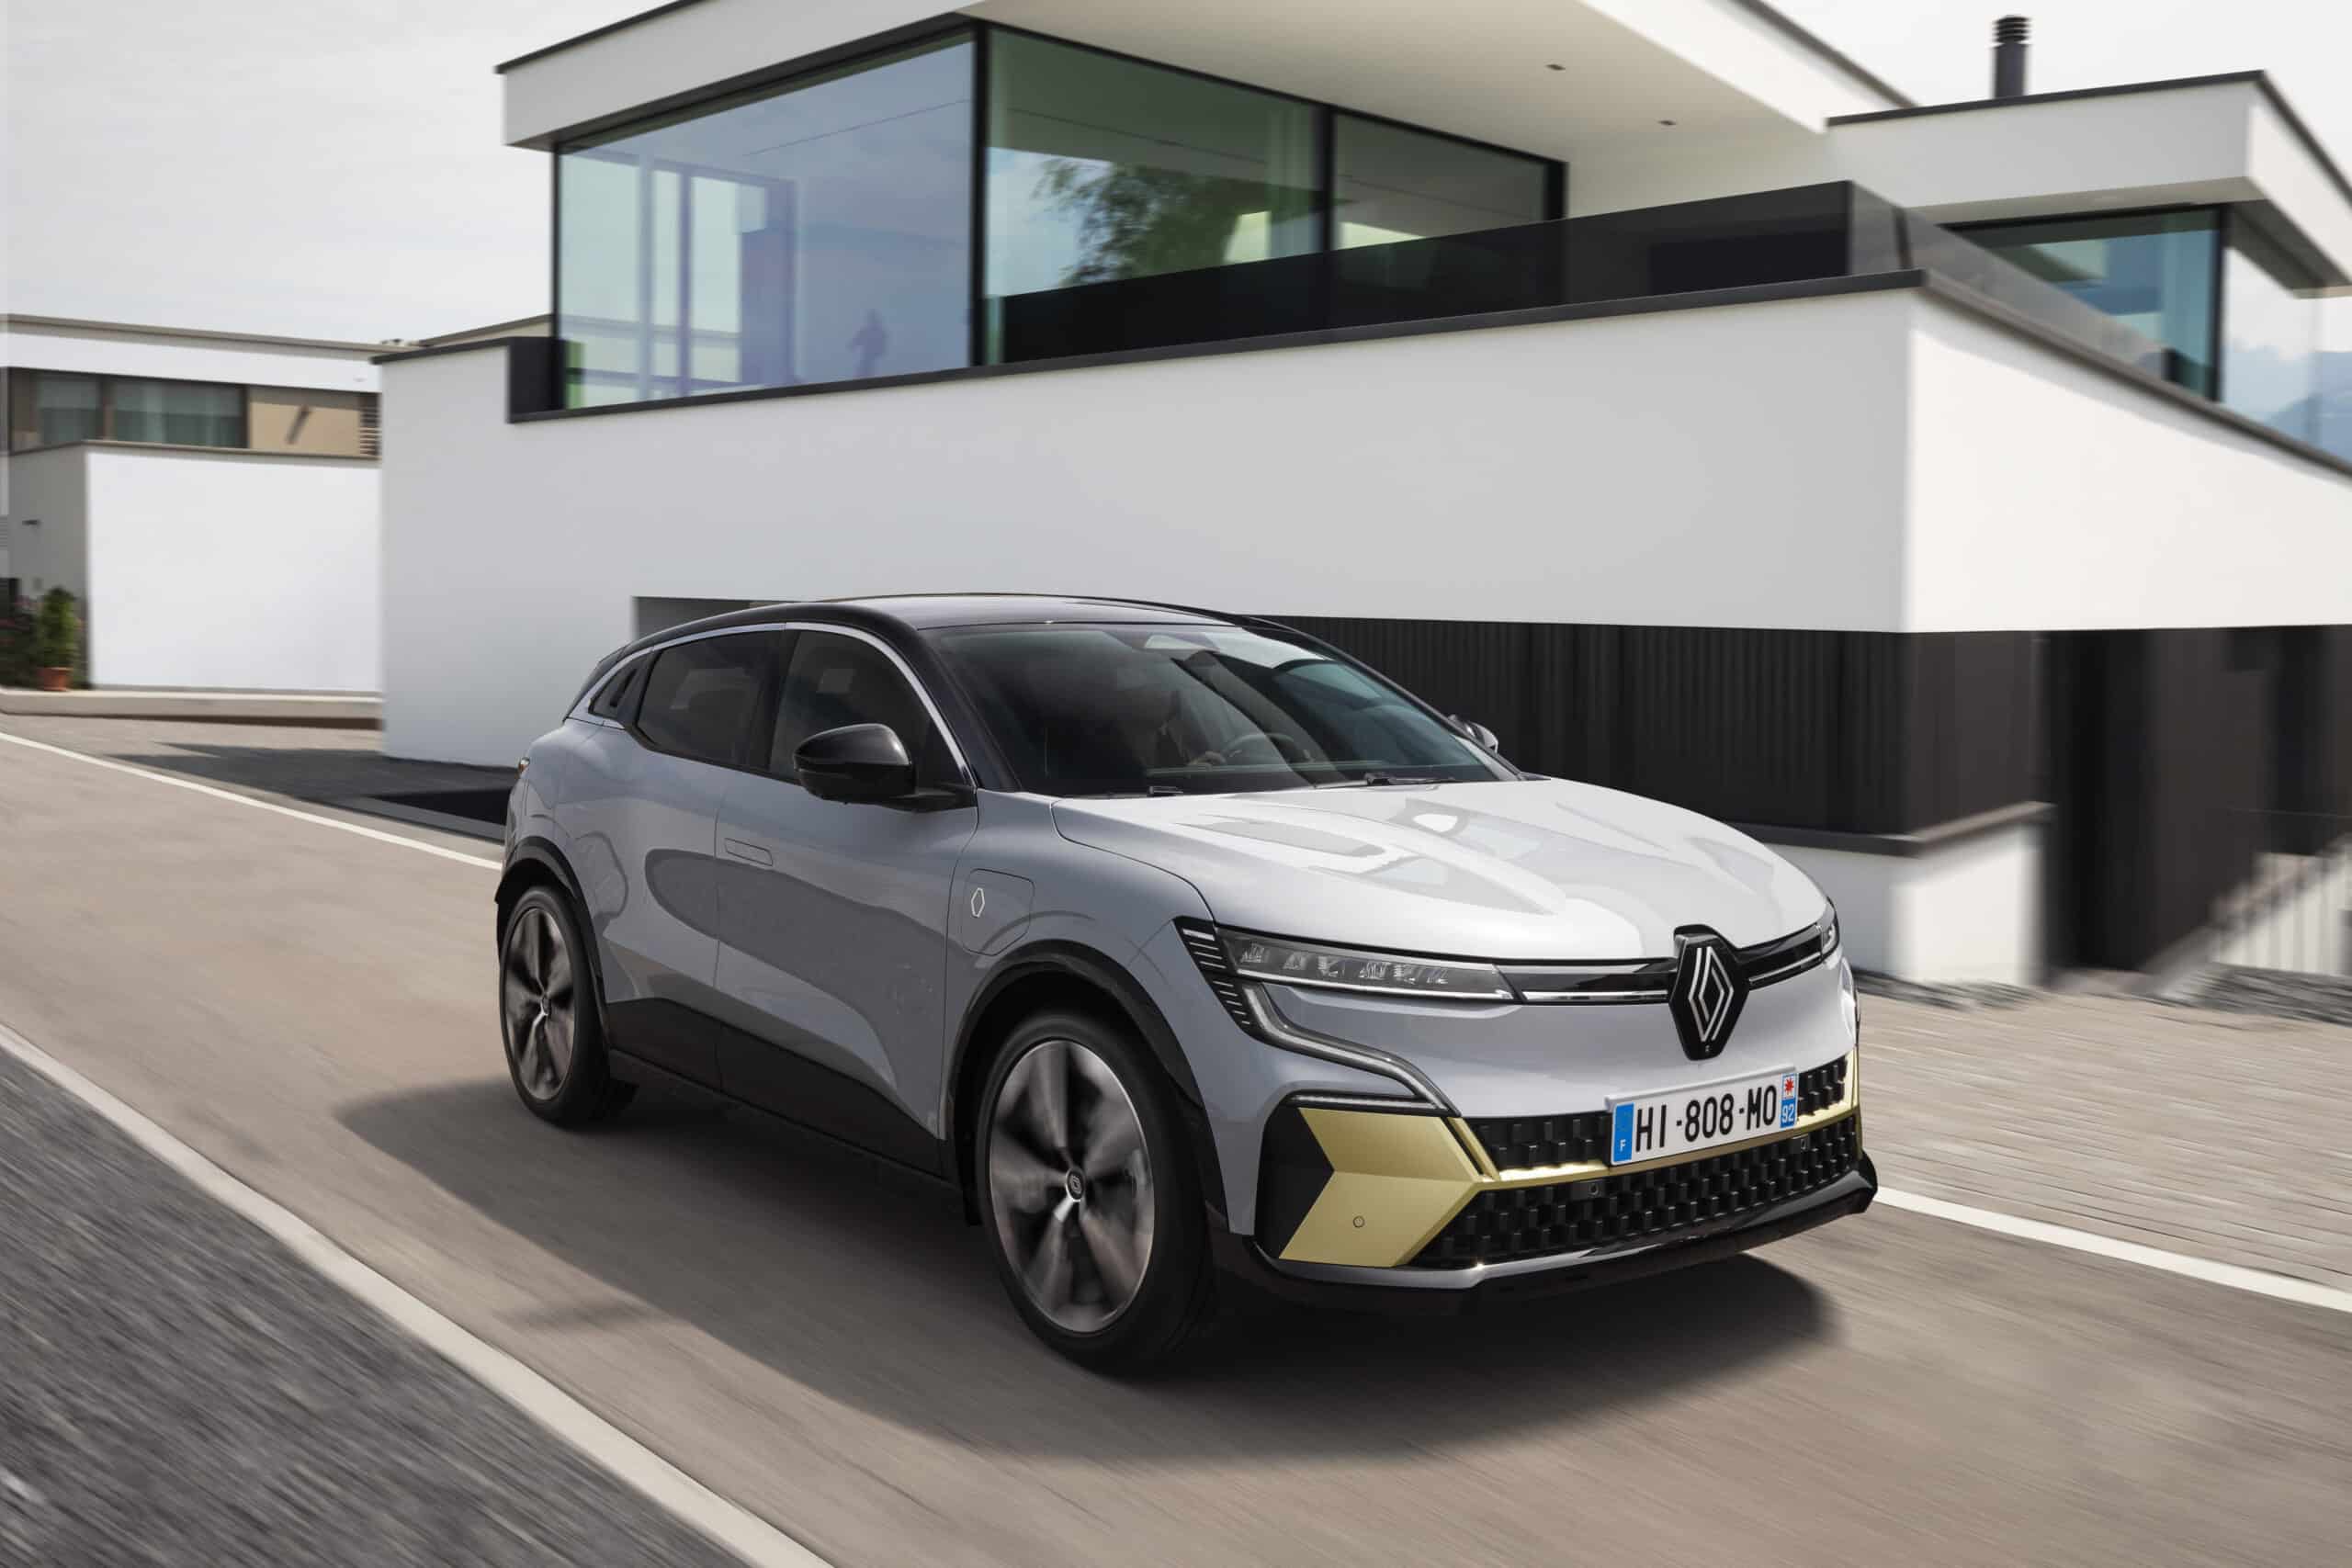 Renault Mégane E-TECH es de los coches que montan la tecnología FOTA